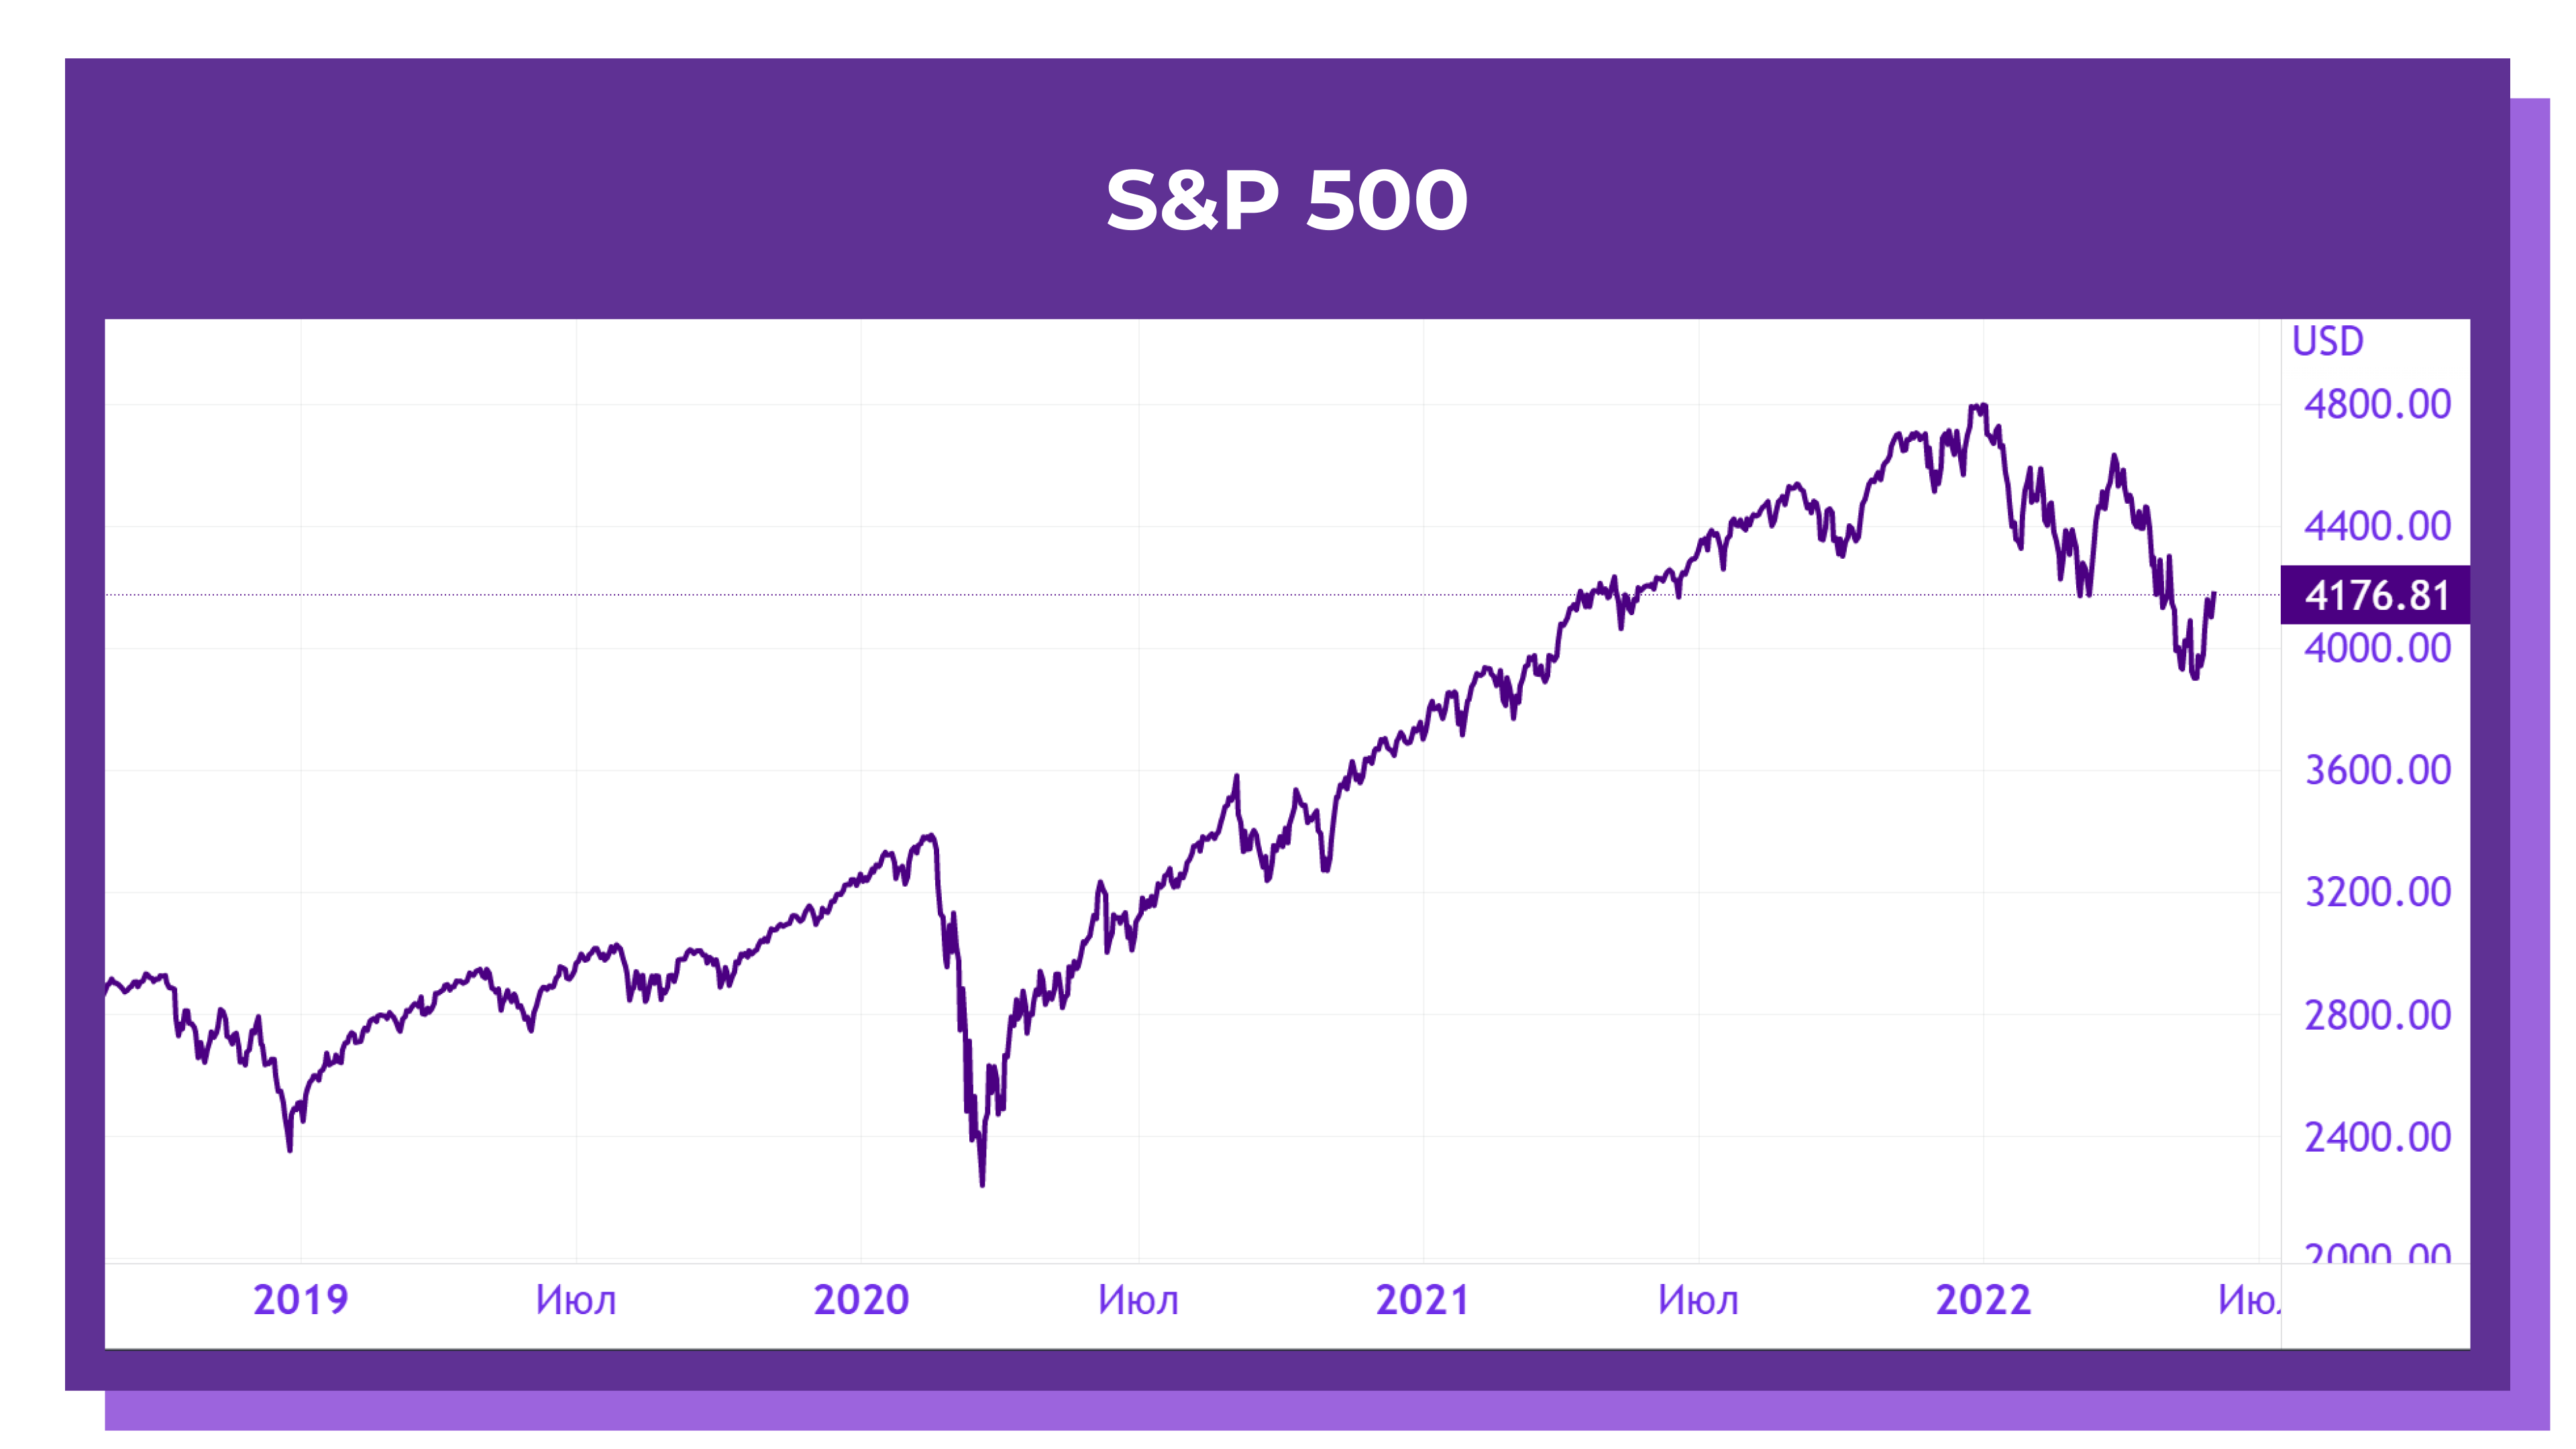 Динамика S&P 500